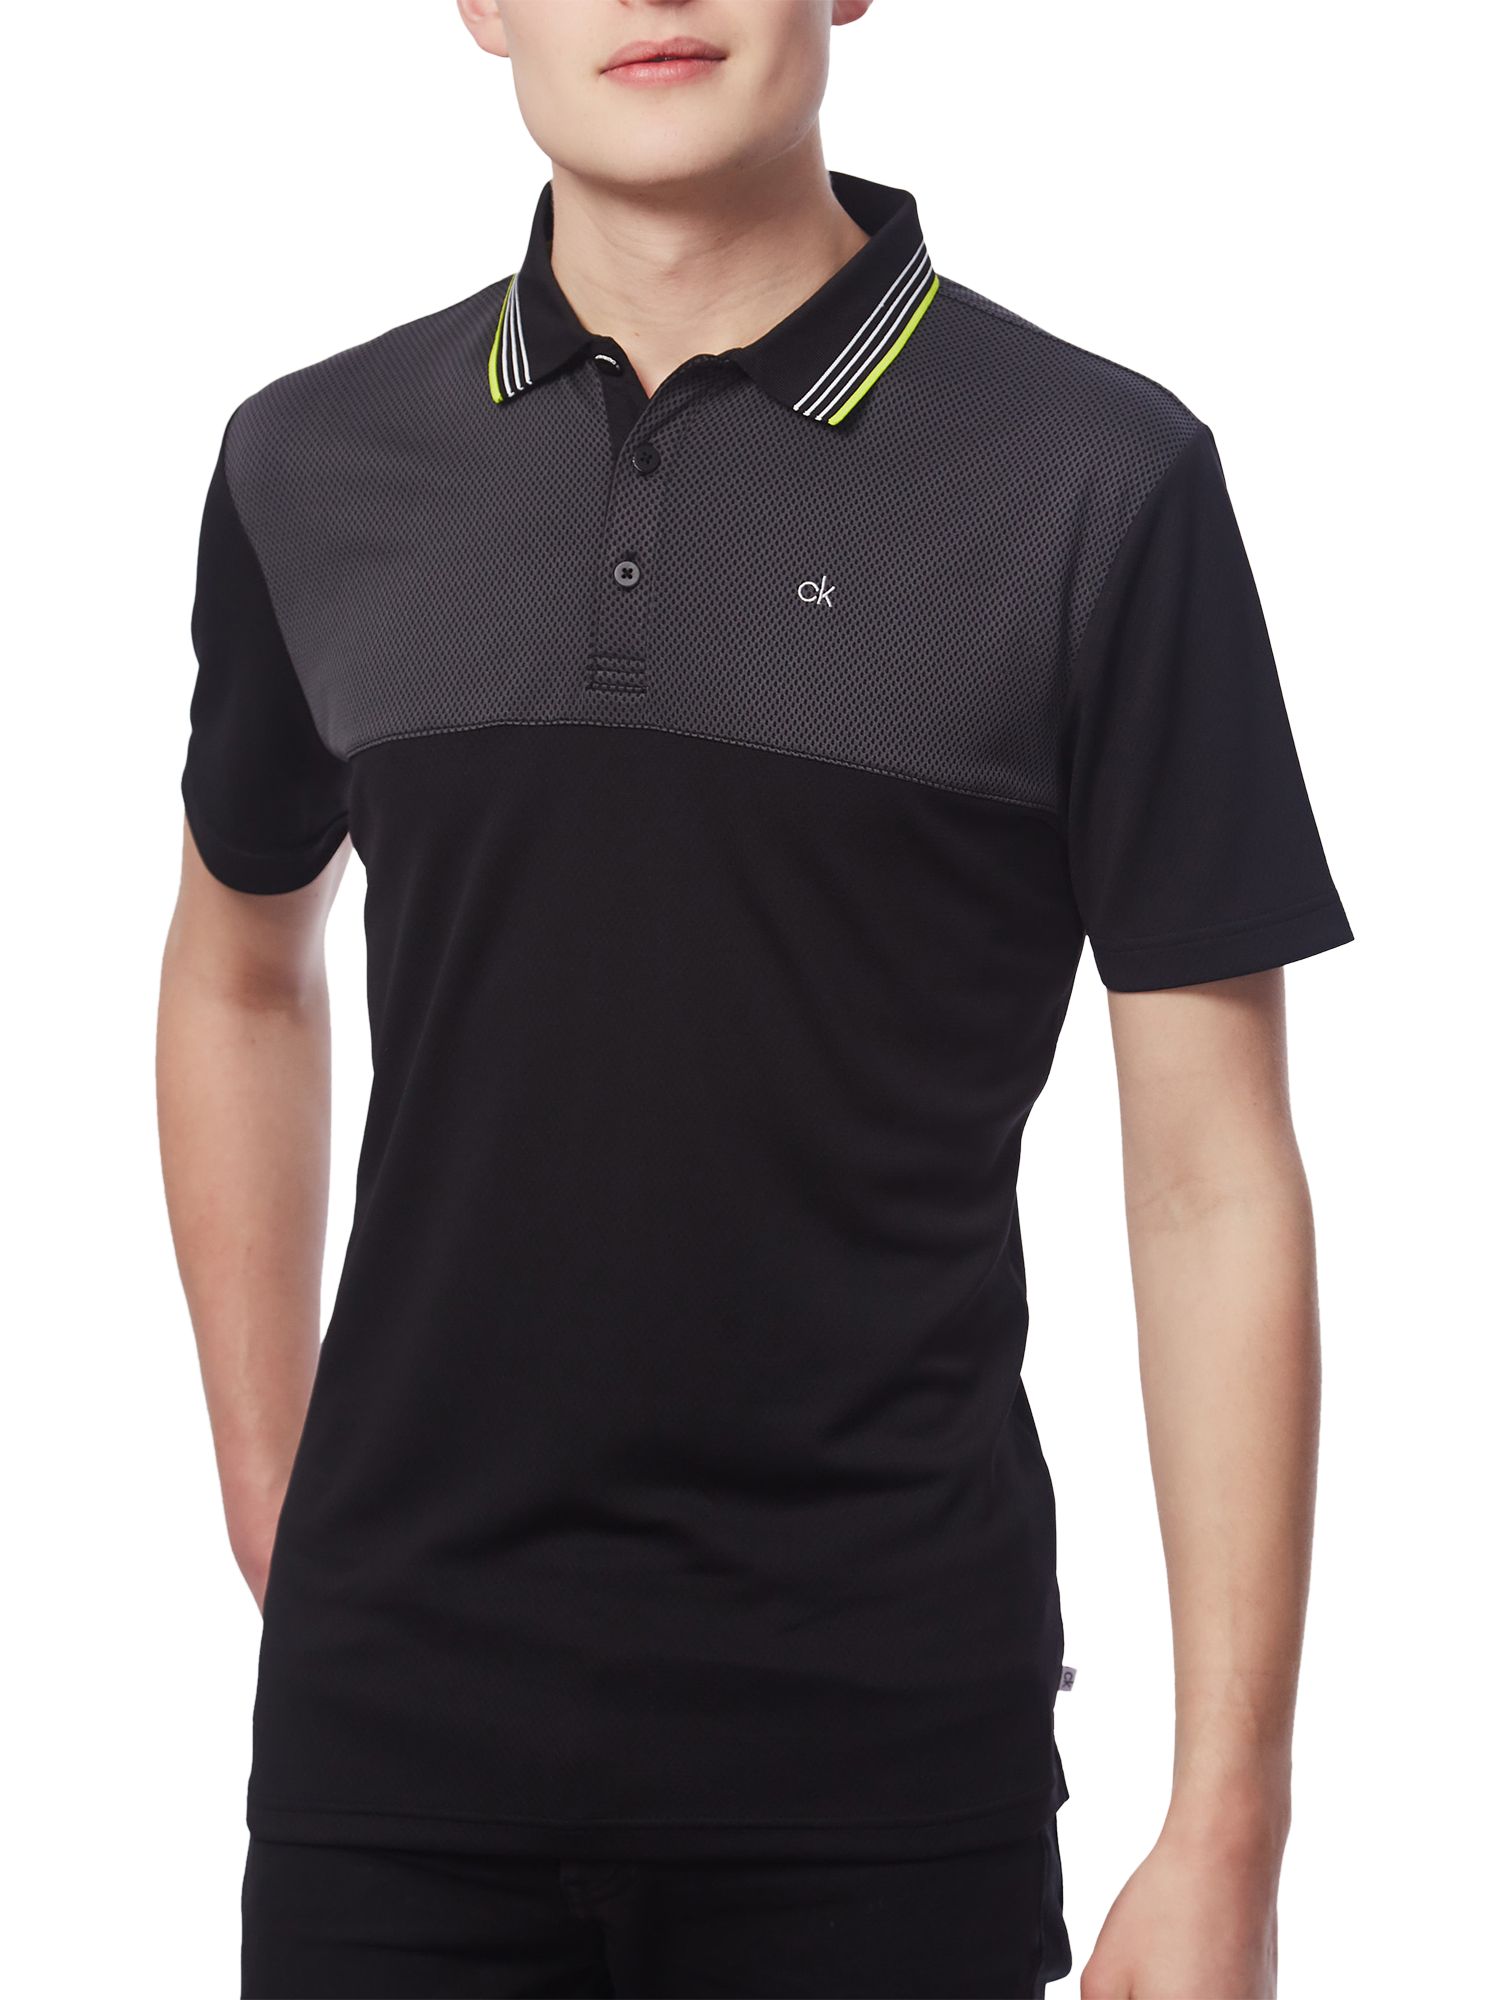 Calvin Klein Golf 39th Street Polo Shirt, Black/Lime